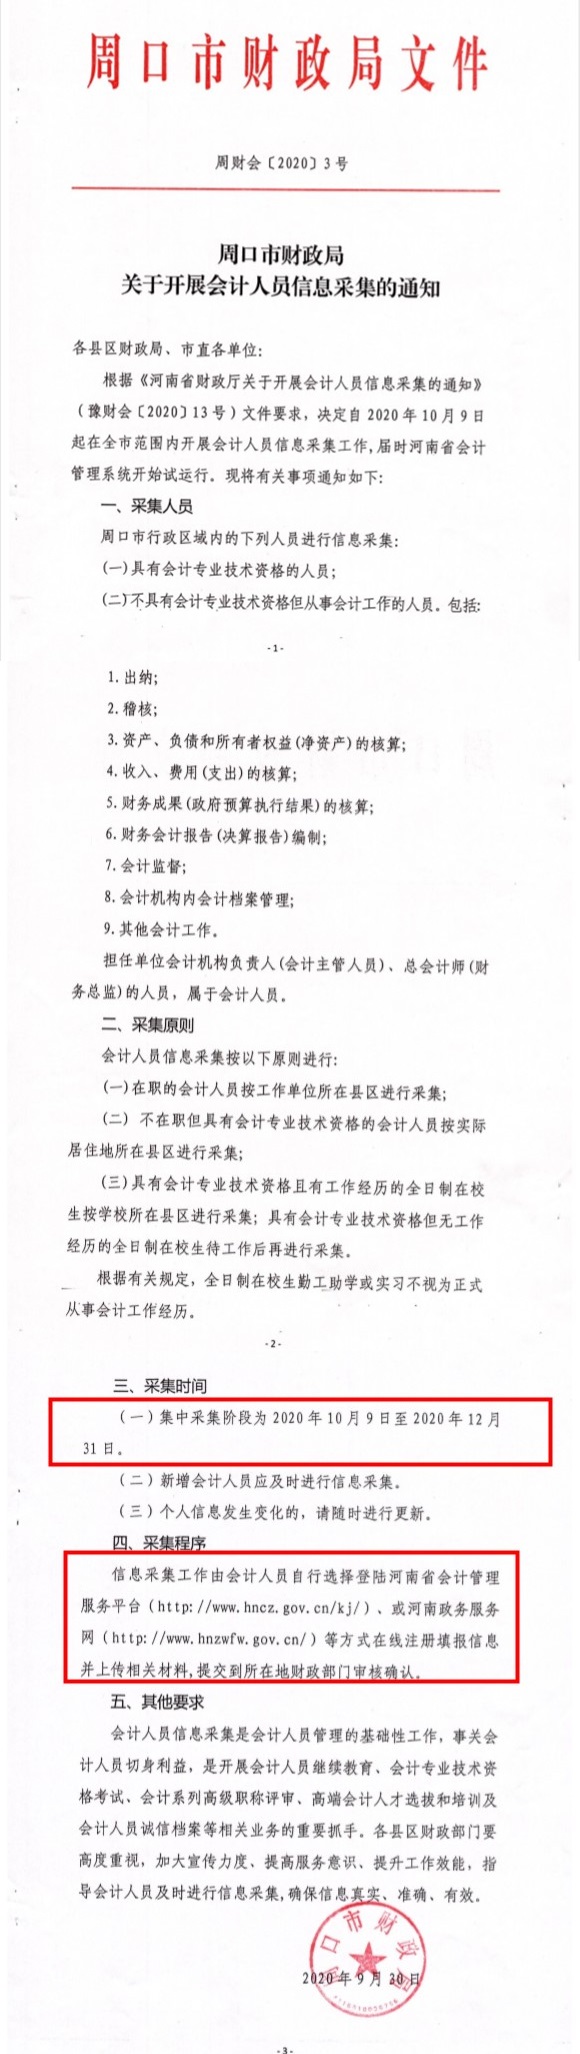 河南省周口市发布2020年会计人员信息采集通知